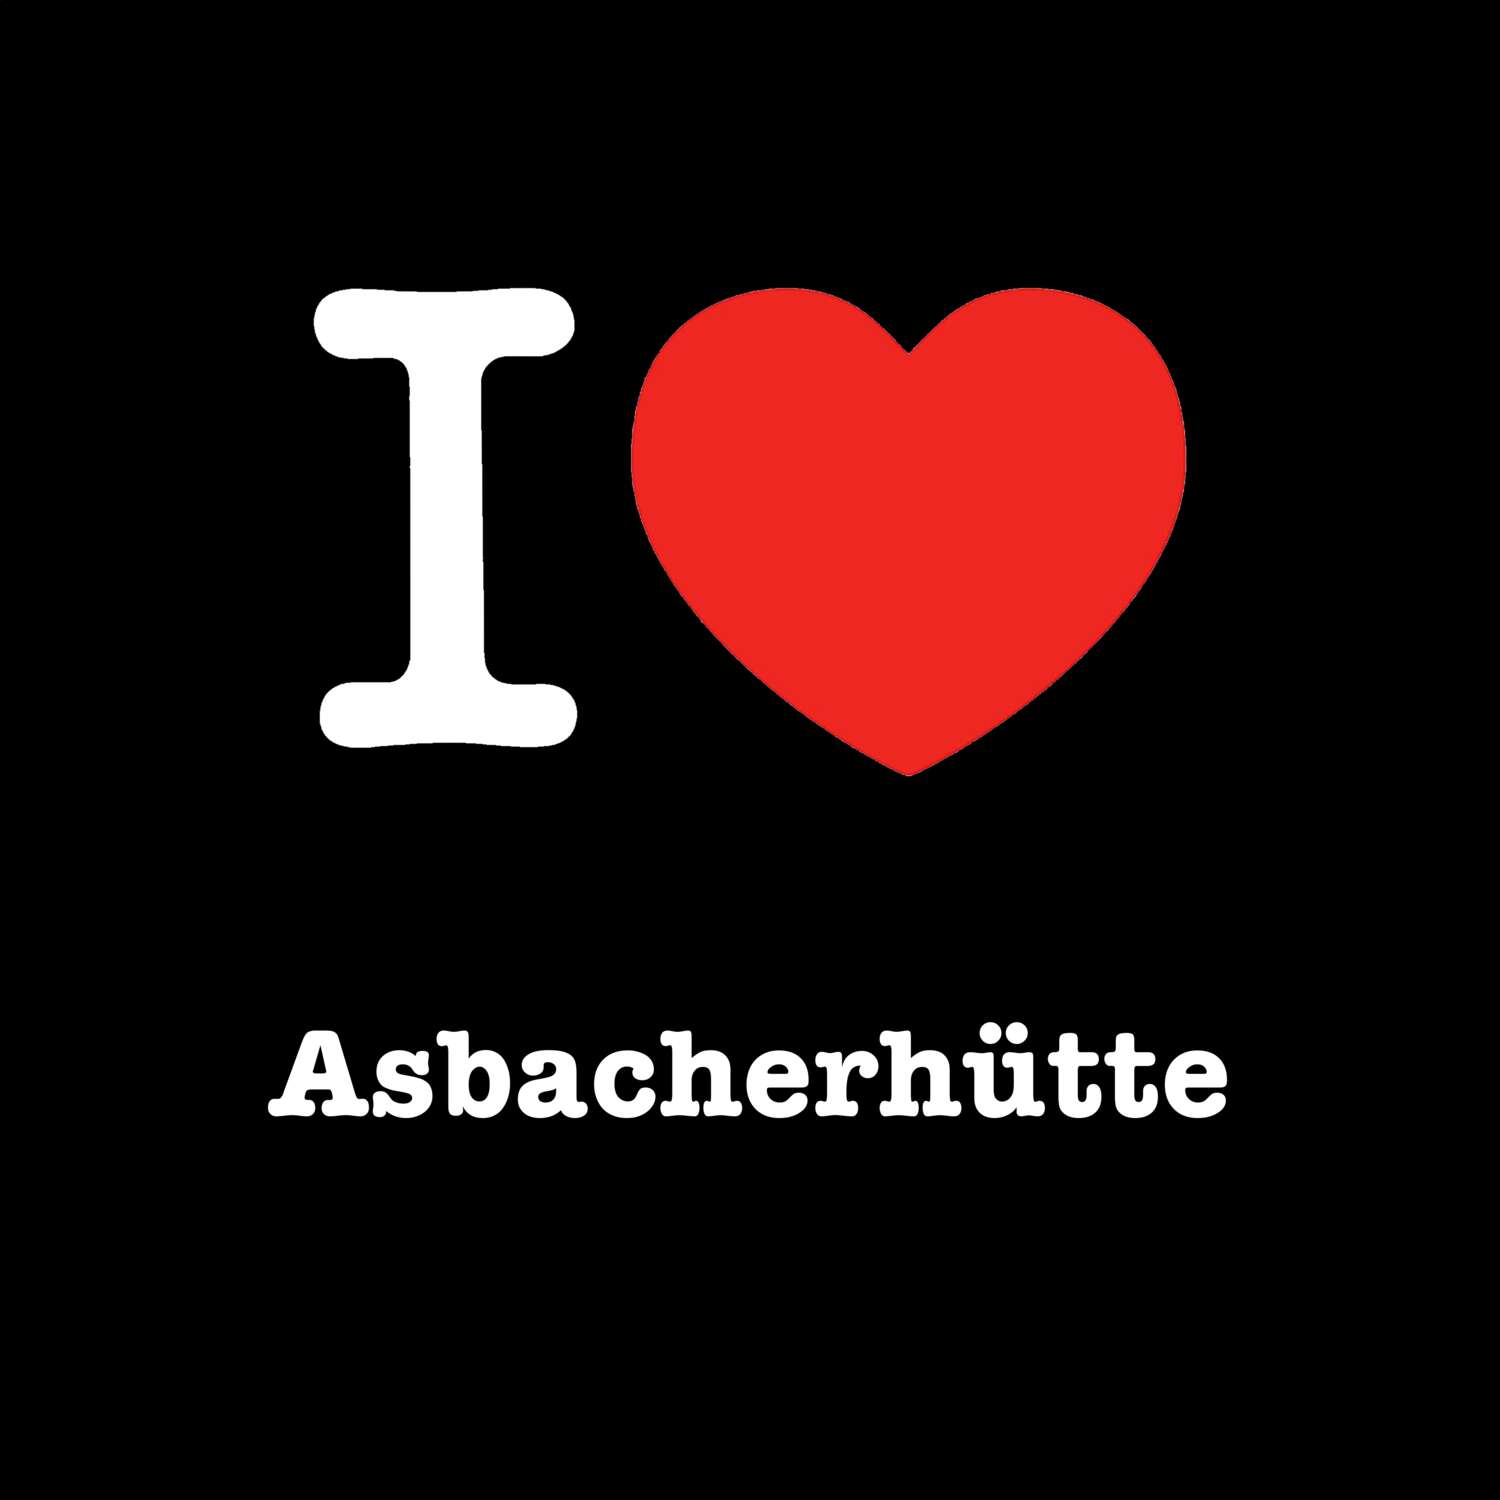 Asbacherhütte T-Shirt »I love«